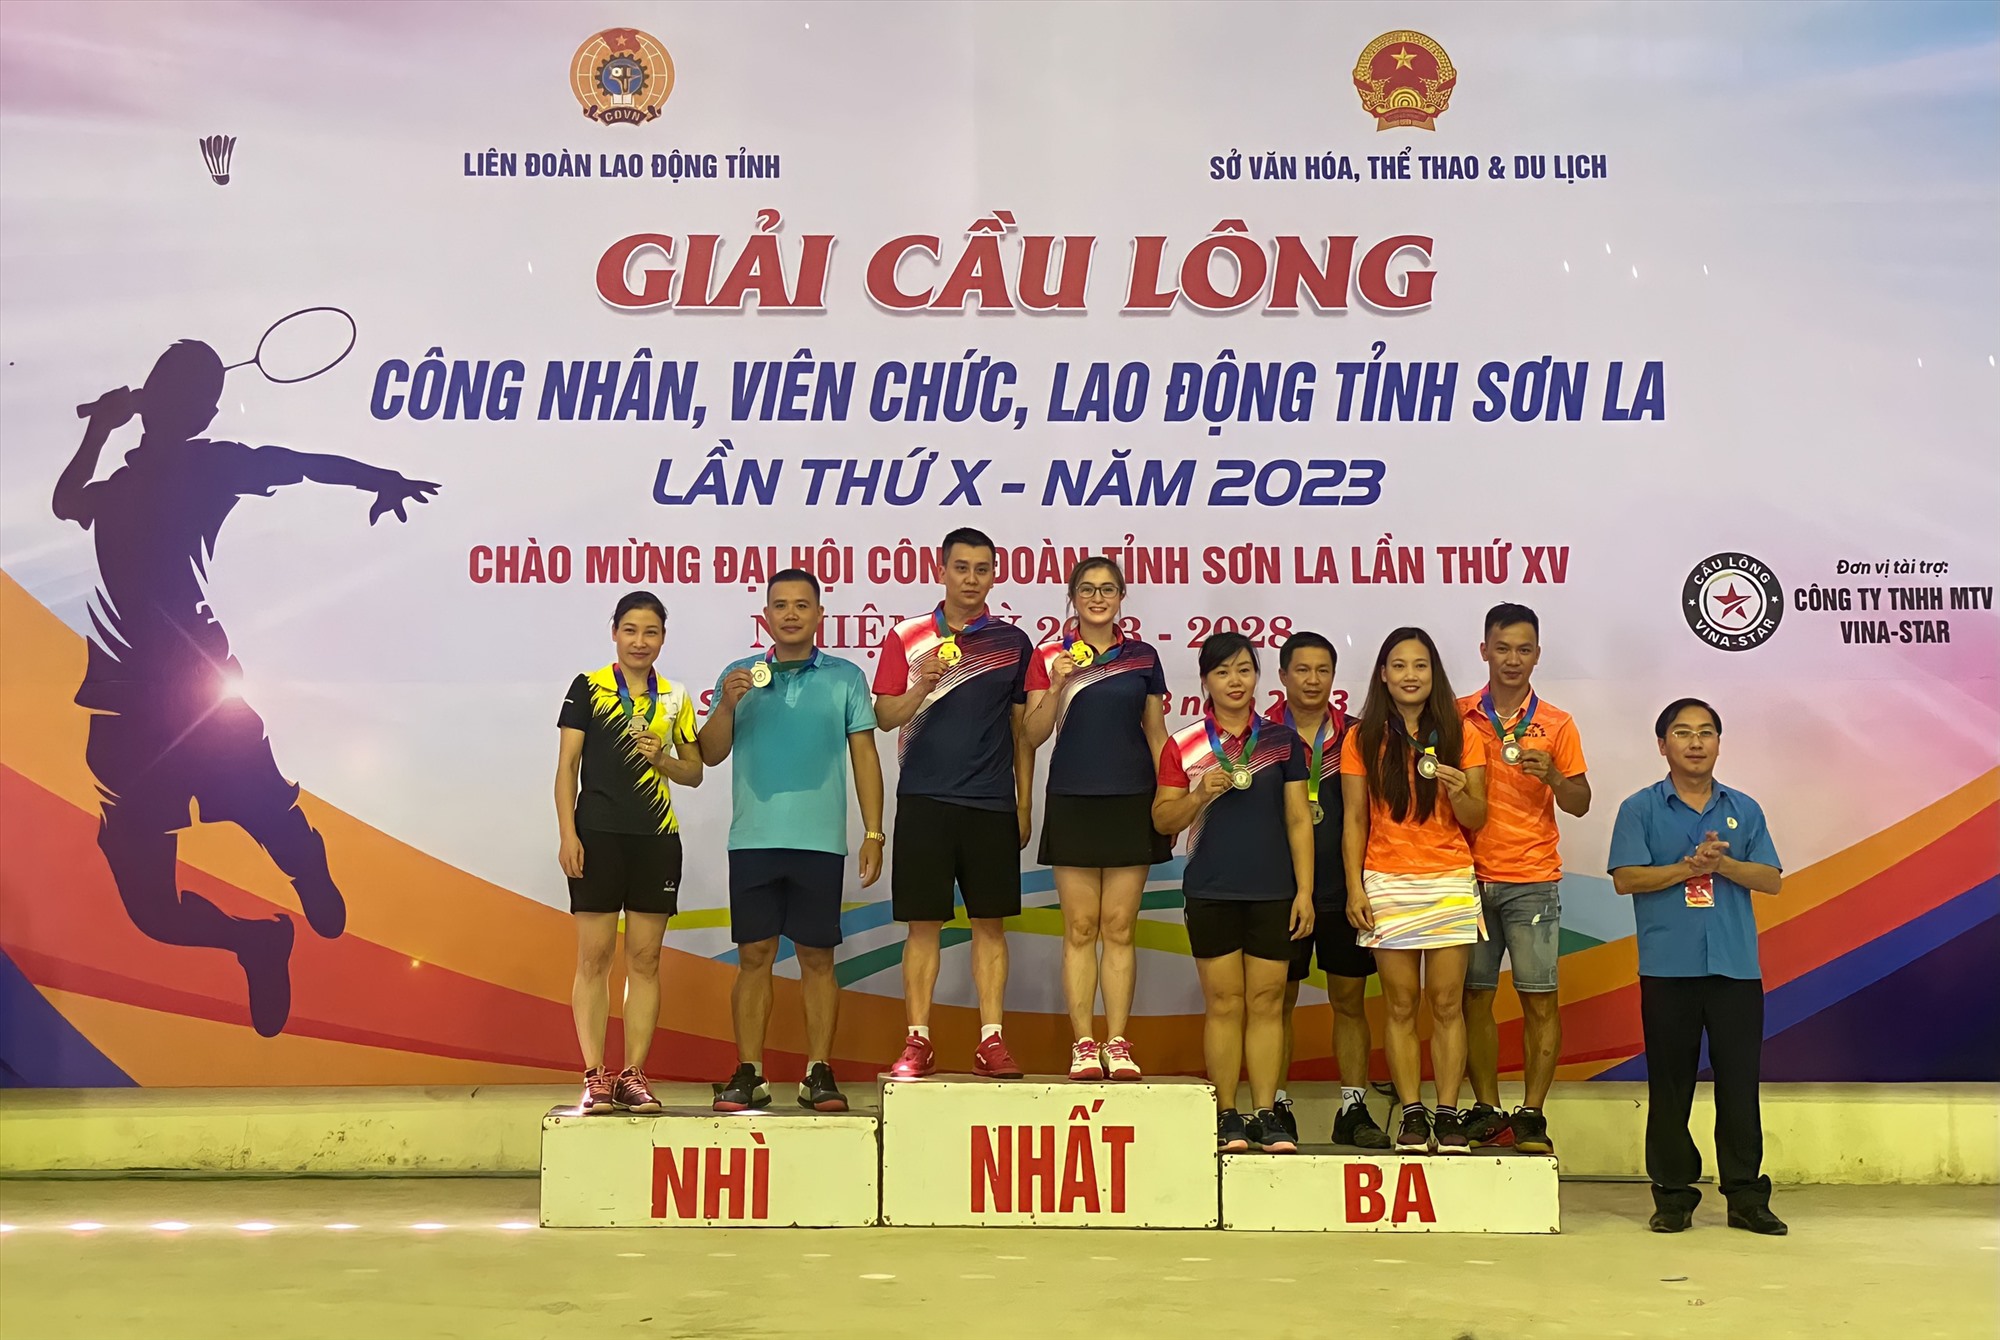 Kết thúc giải đấu, ông Vàng A Lả - Chủ tịch LĐLĐ tỉnh Sơn La đã thay mặt ban tổ chức trao huy chương tới các đội.